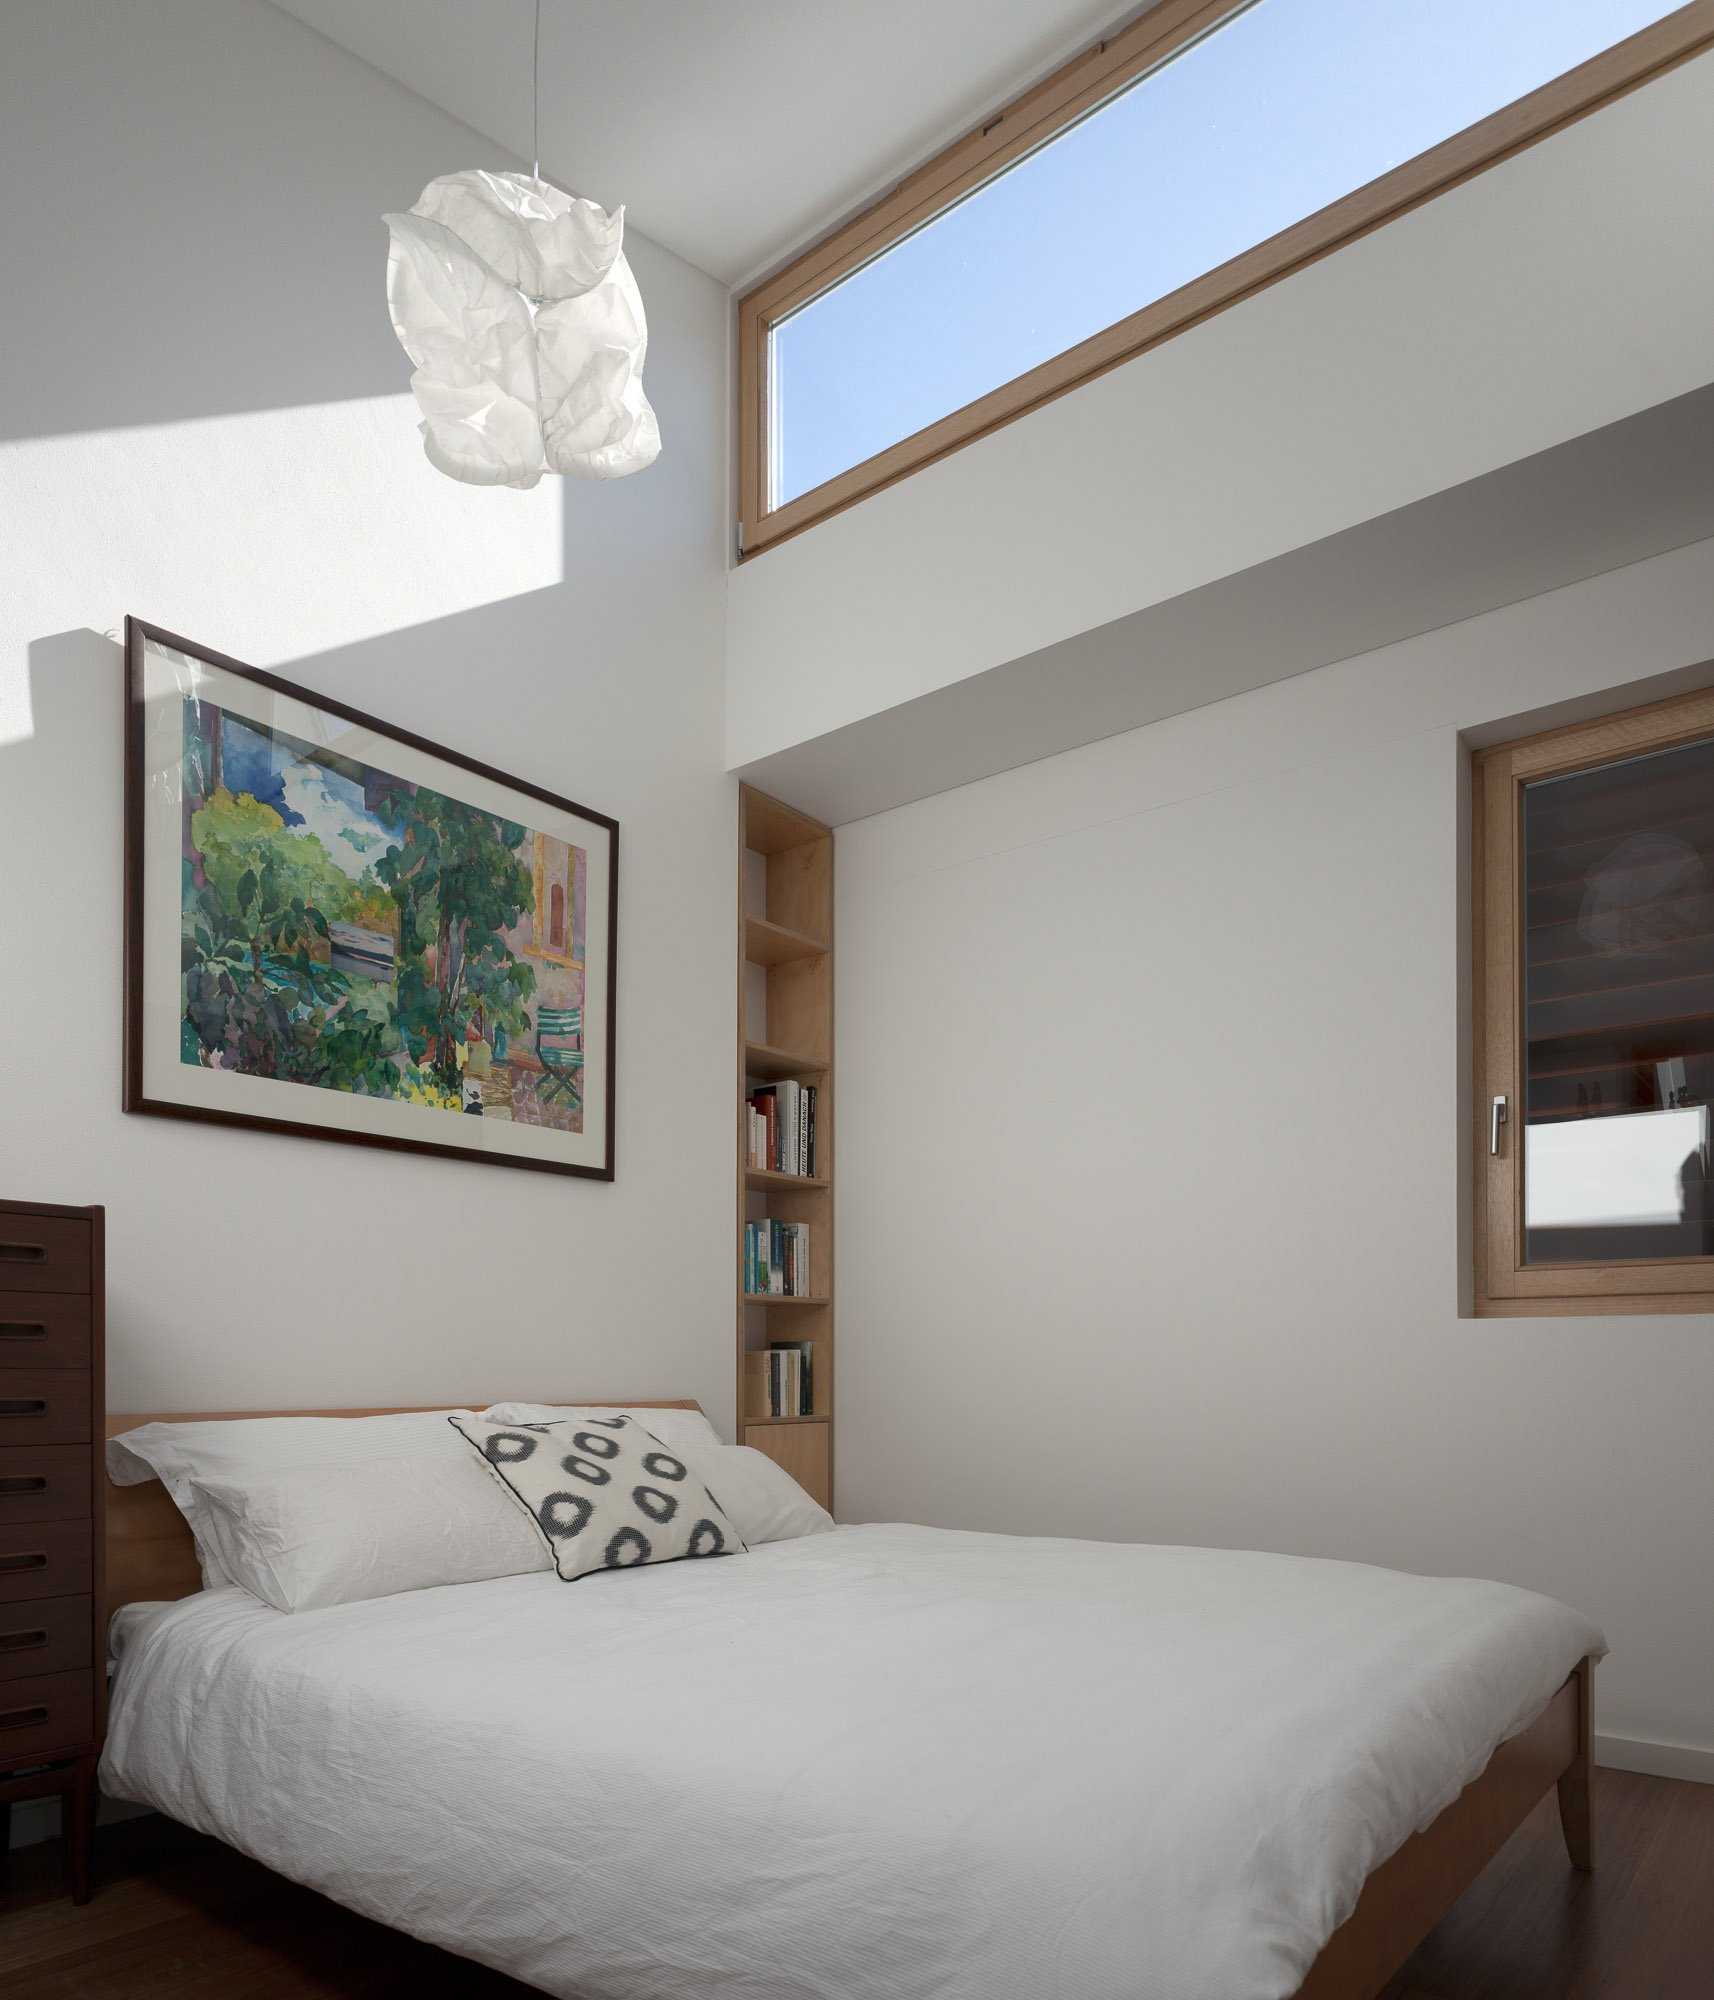 Спальня без окна: как добавить света в интерьер?